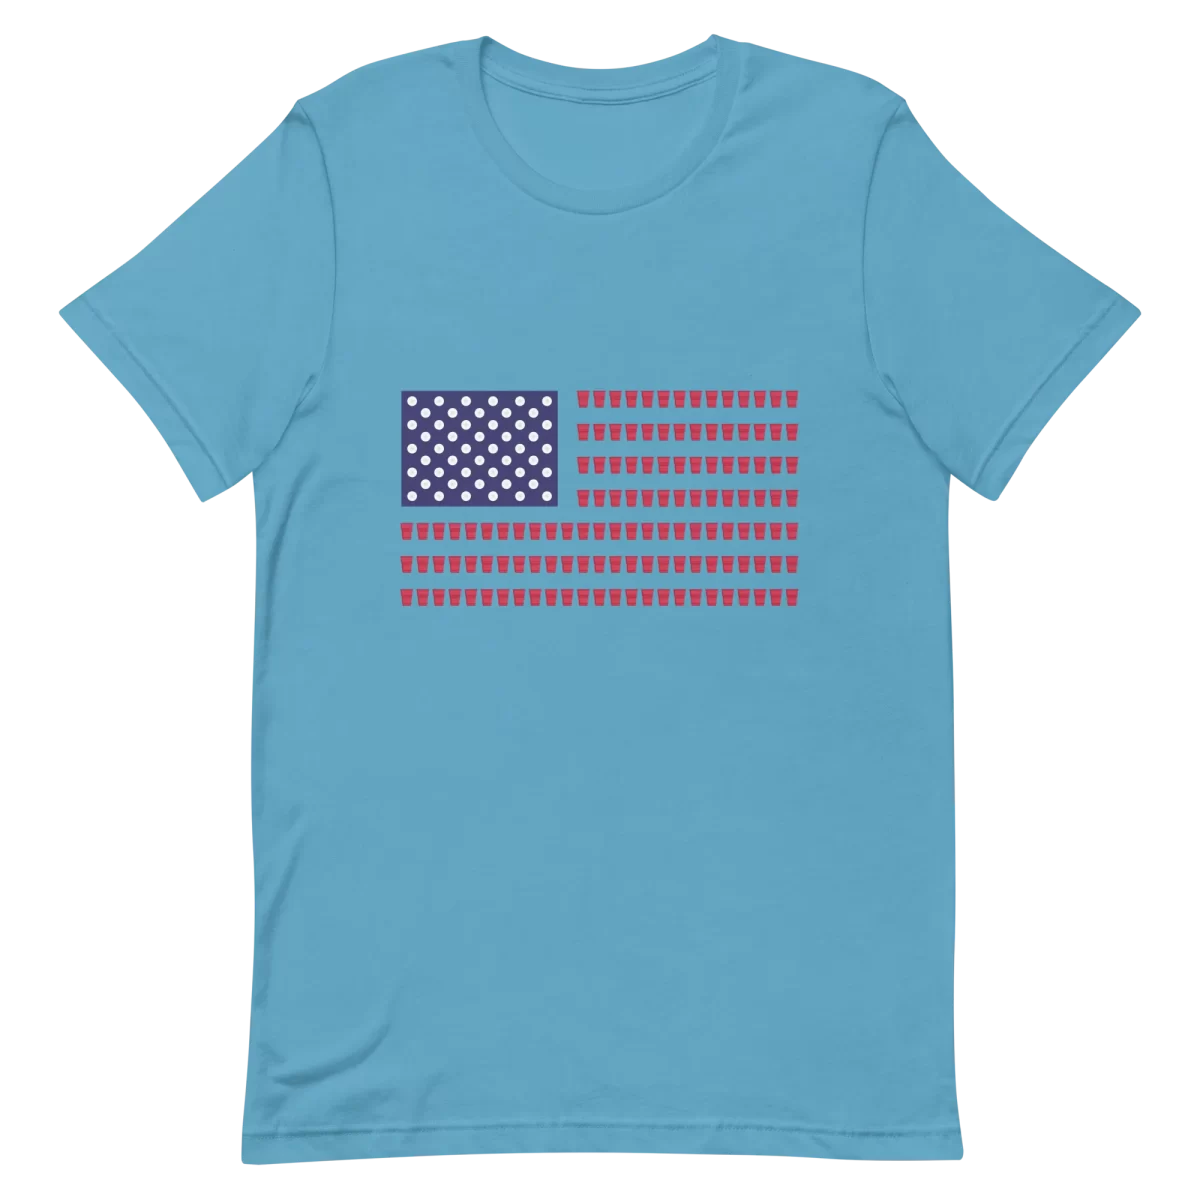 Unisex T-Shirt - Beer Pong Flag - Ocean Blue